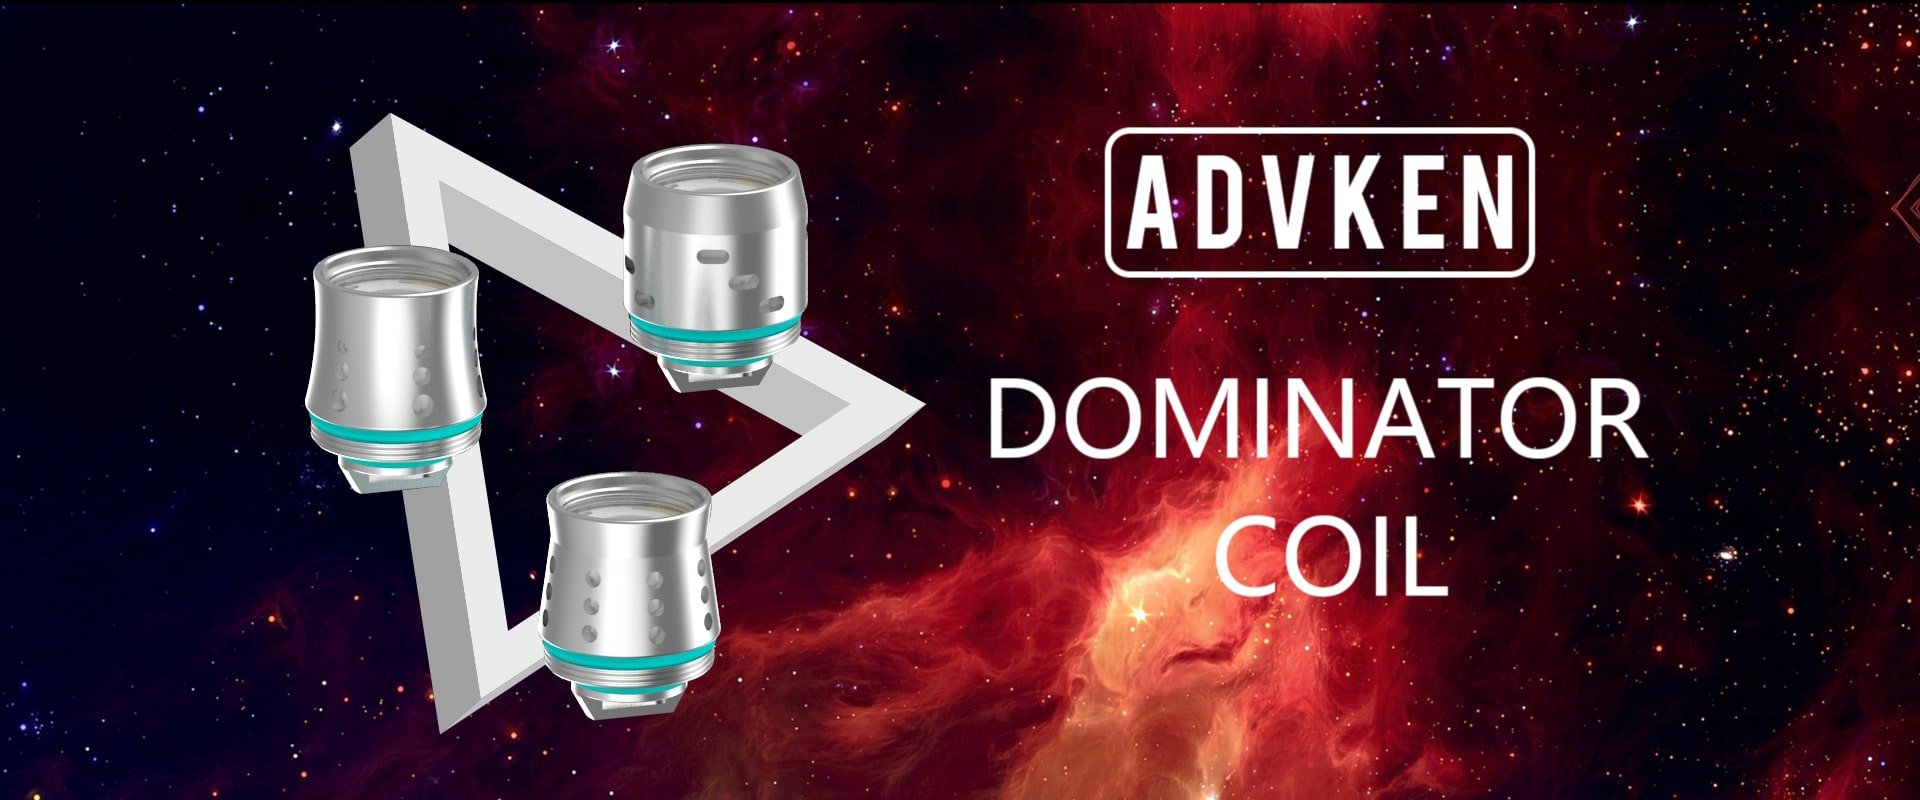 Advken Dominator Coil